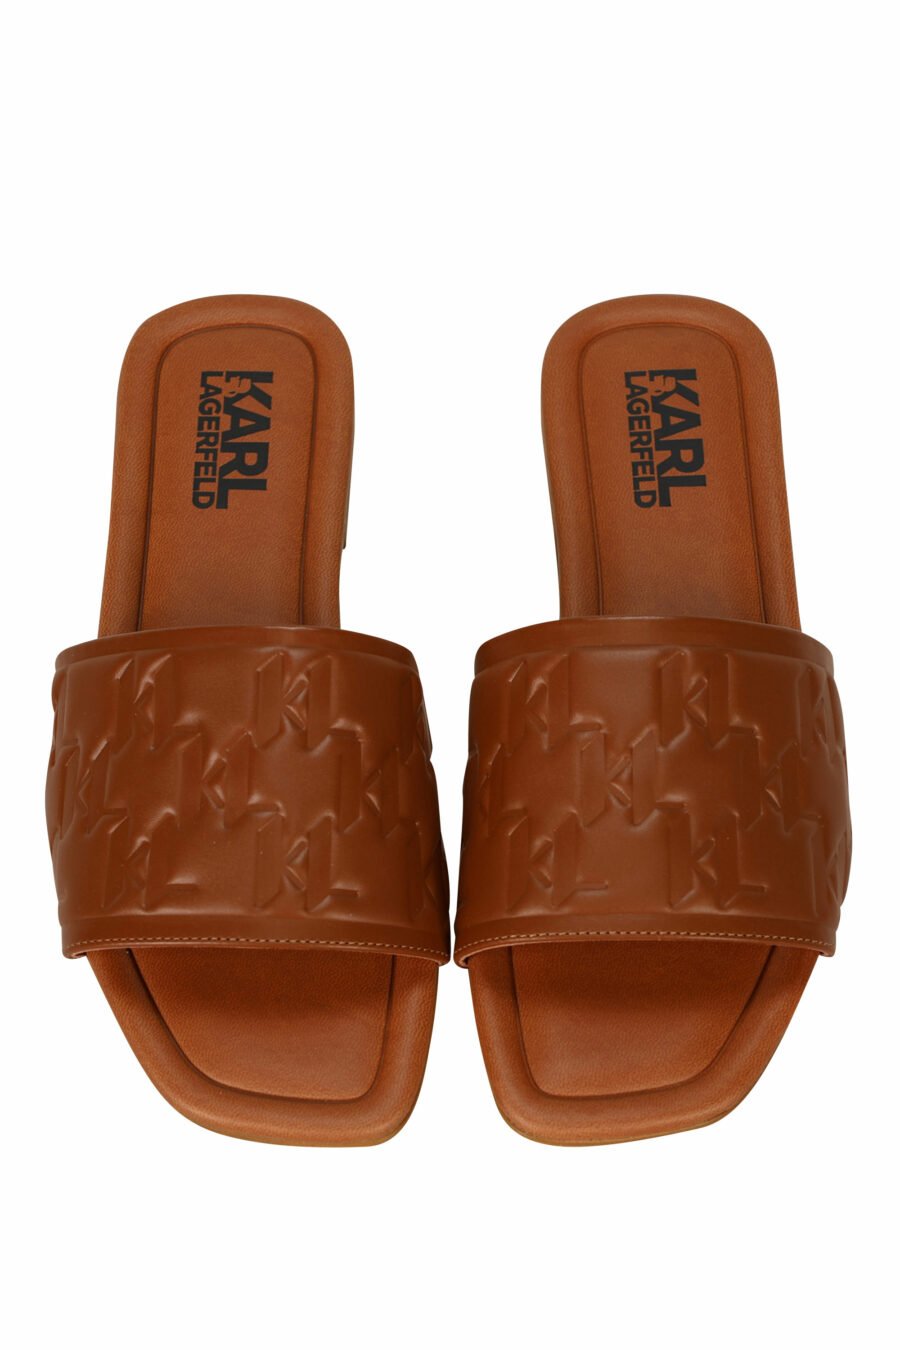 Sandalias marrón de cuero con logo monogram - 5059529404191 4